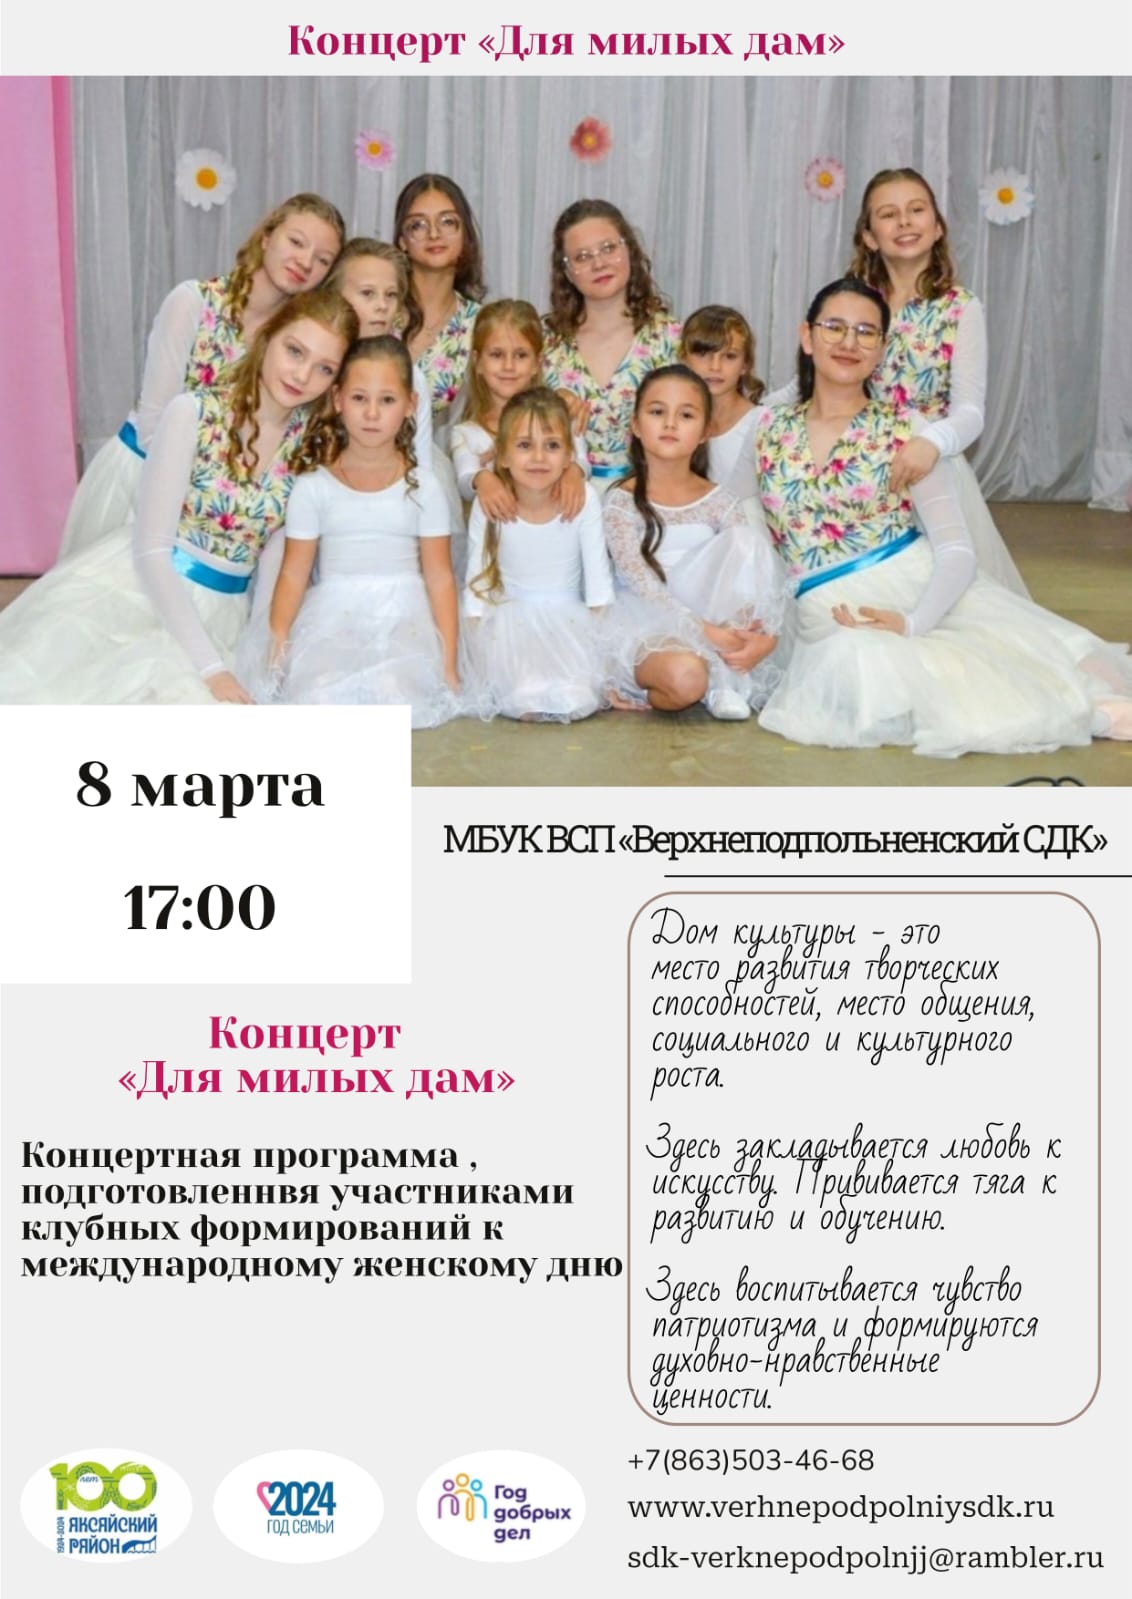 8 марта в 17:00 в сельском доме культуры х.Верхнеподпольный состоится праздничный концерт «Для милых дам»